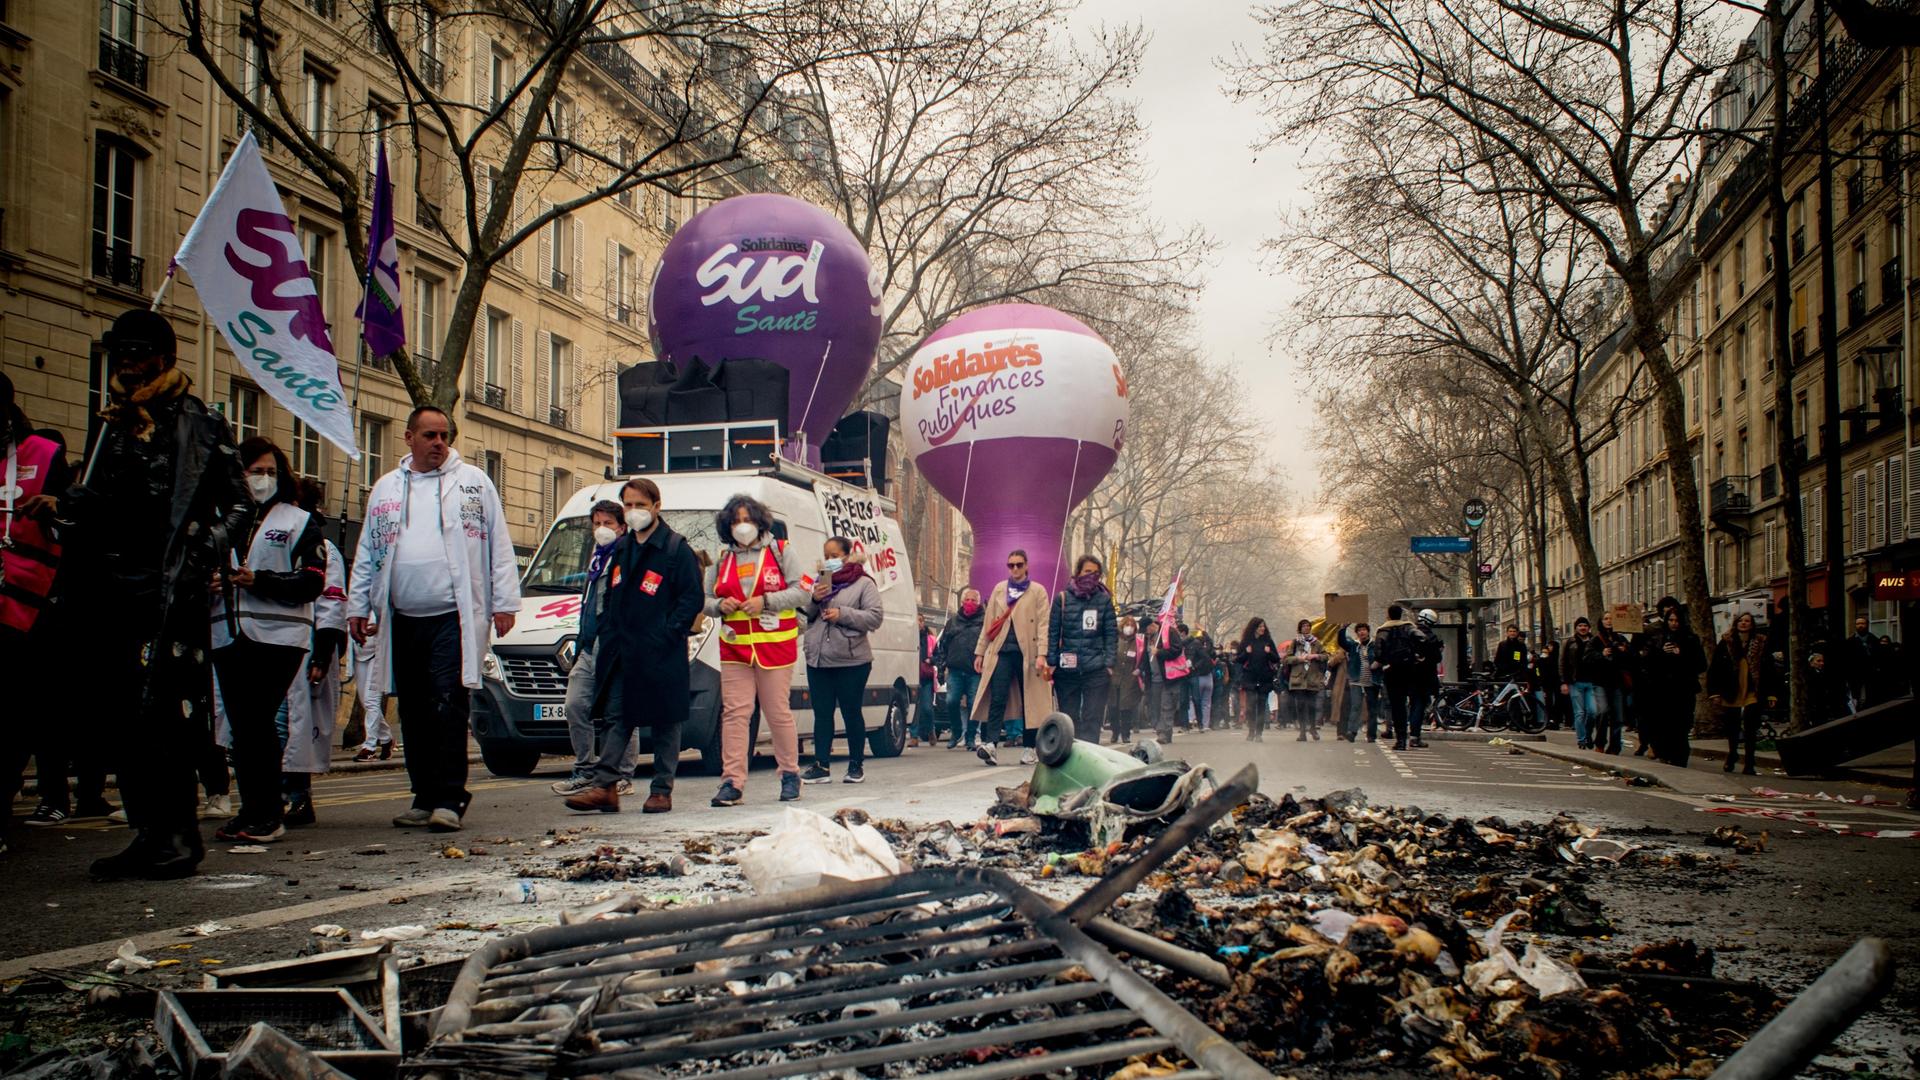 Ein Demonstrationszug in Paris, im Vordergrund des Bildes reste eines Brandes und ein liegendes Absperrgitter.